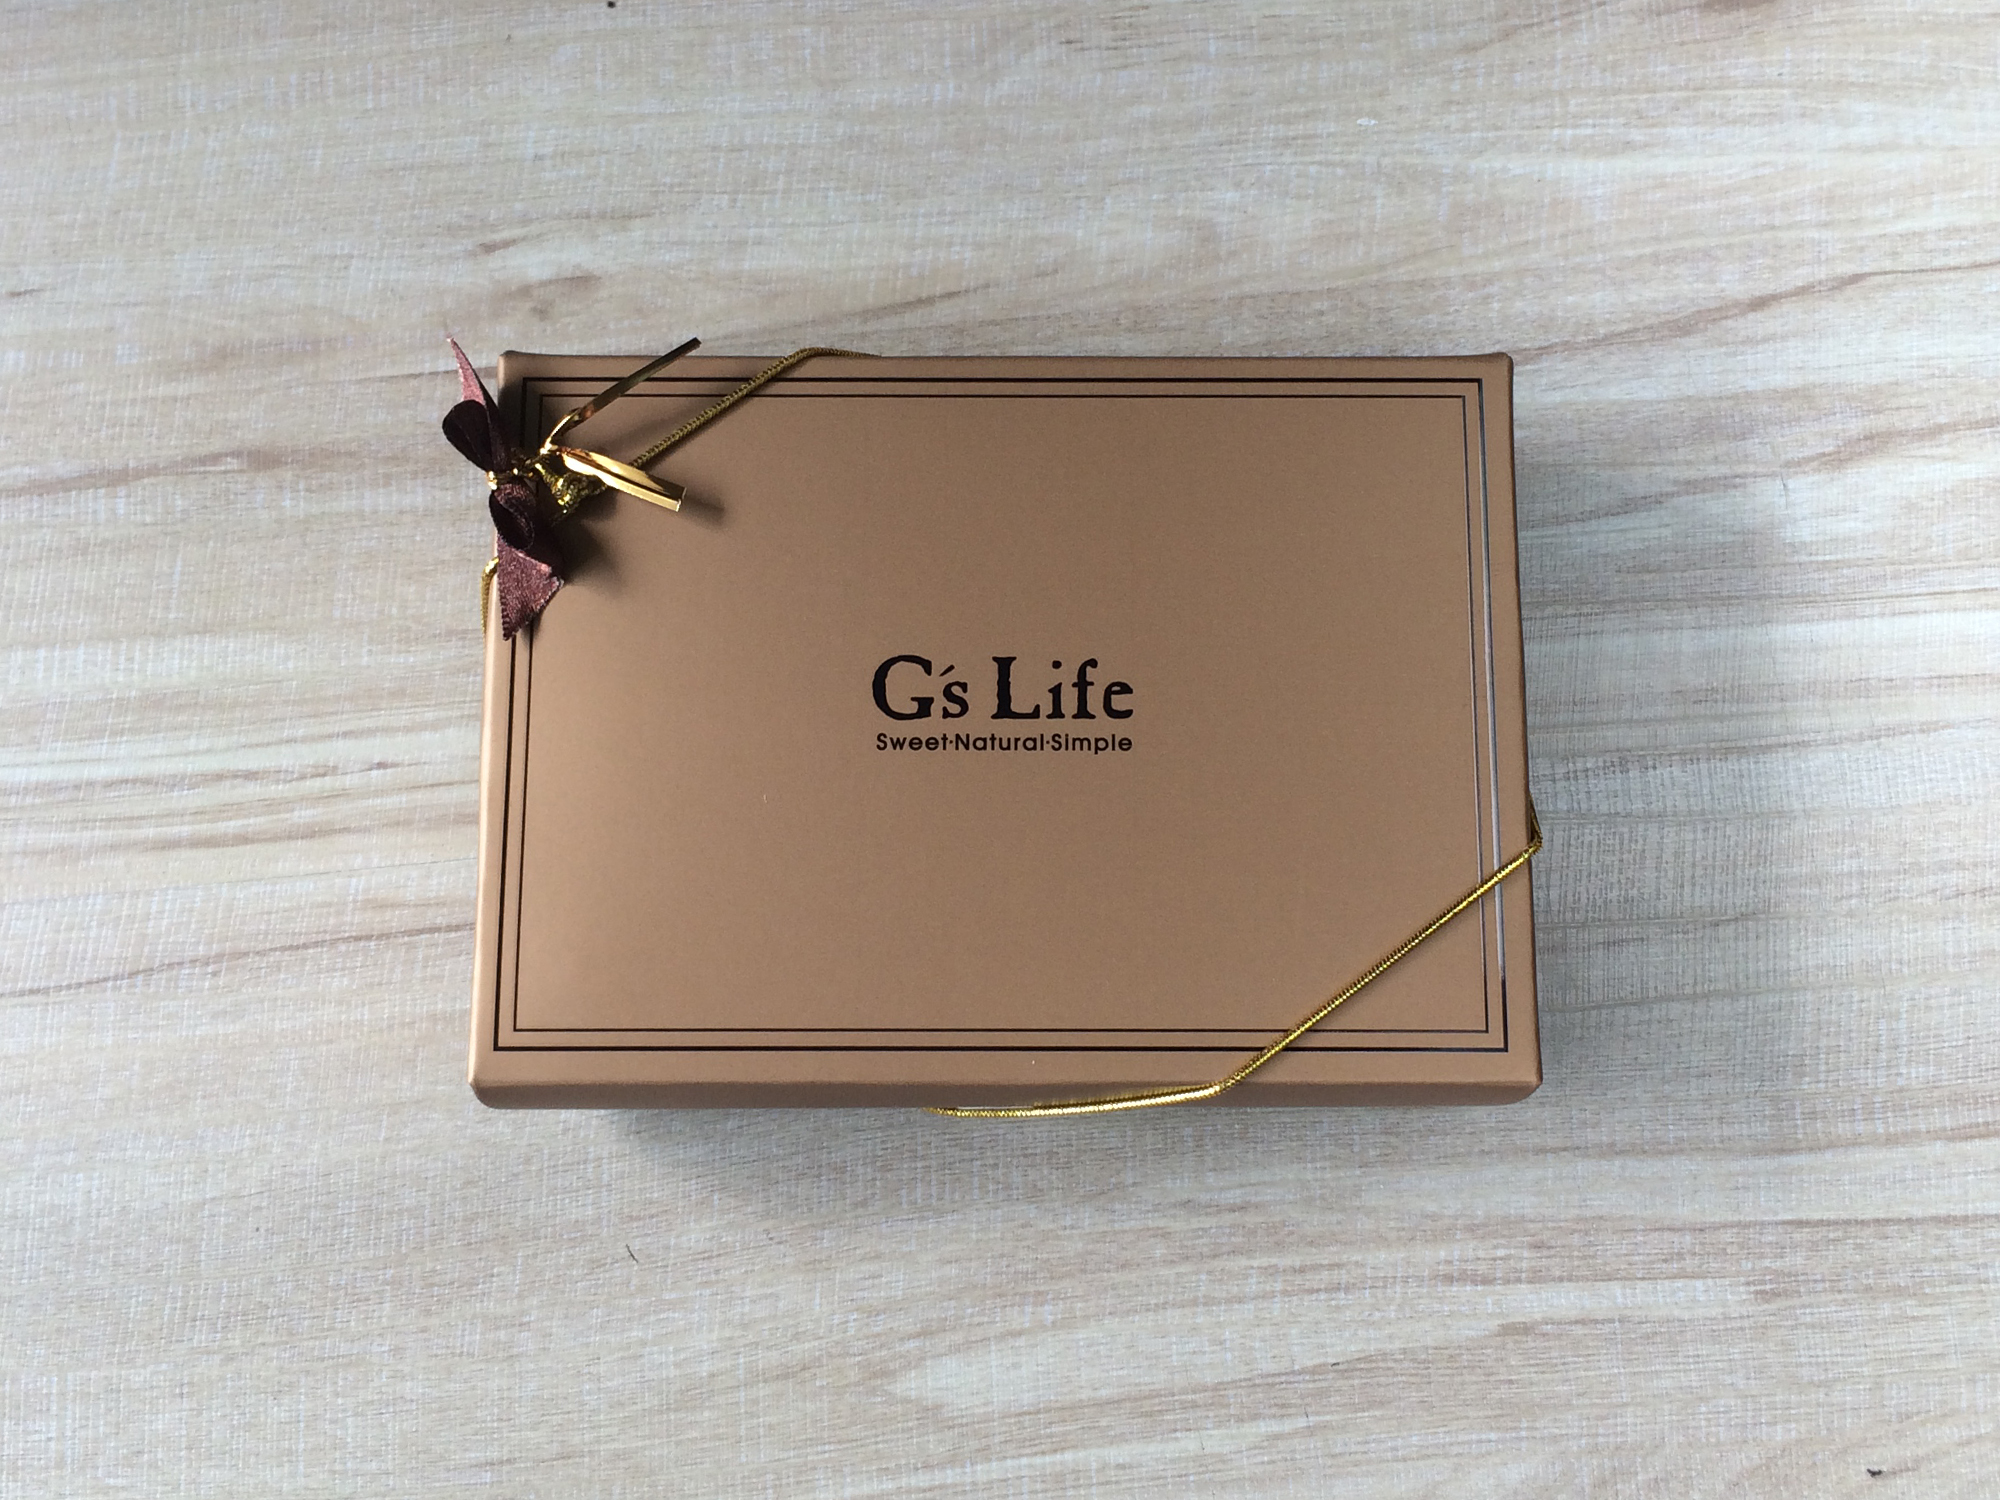 【4/9~5/12母親節現貨特惠】G’s Life 可可花兒‧六入方塊巧克力香皂禮盒